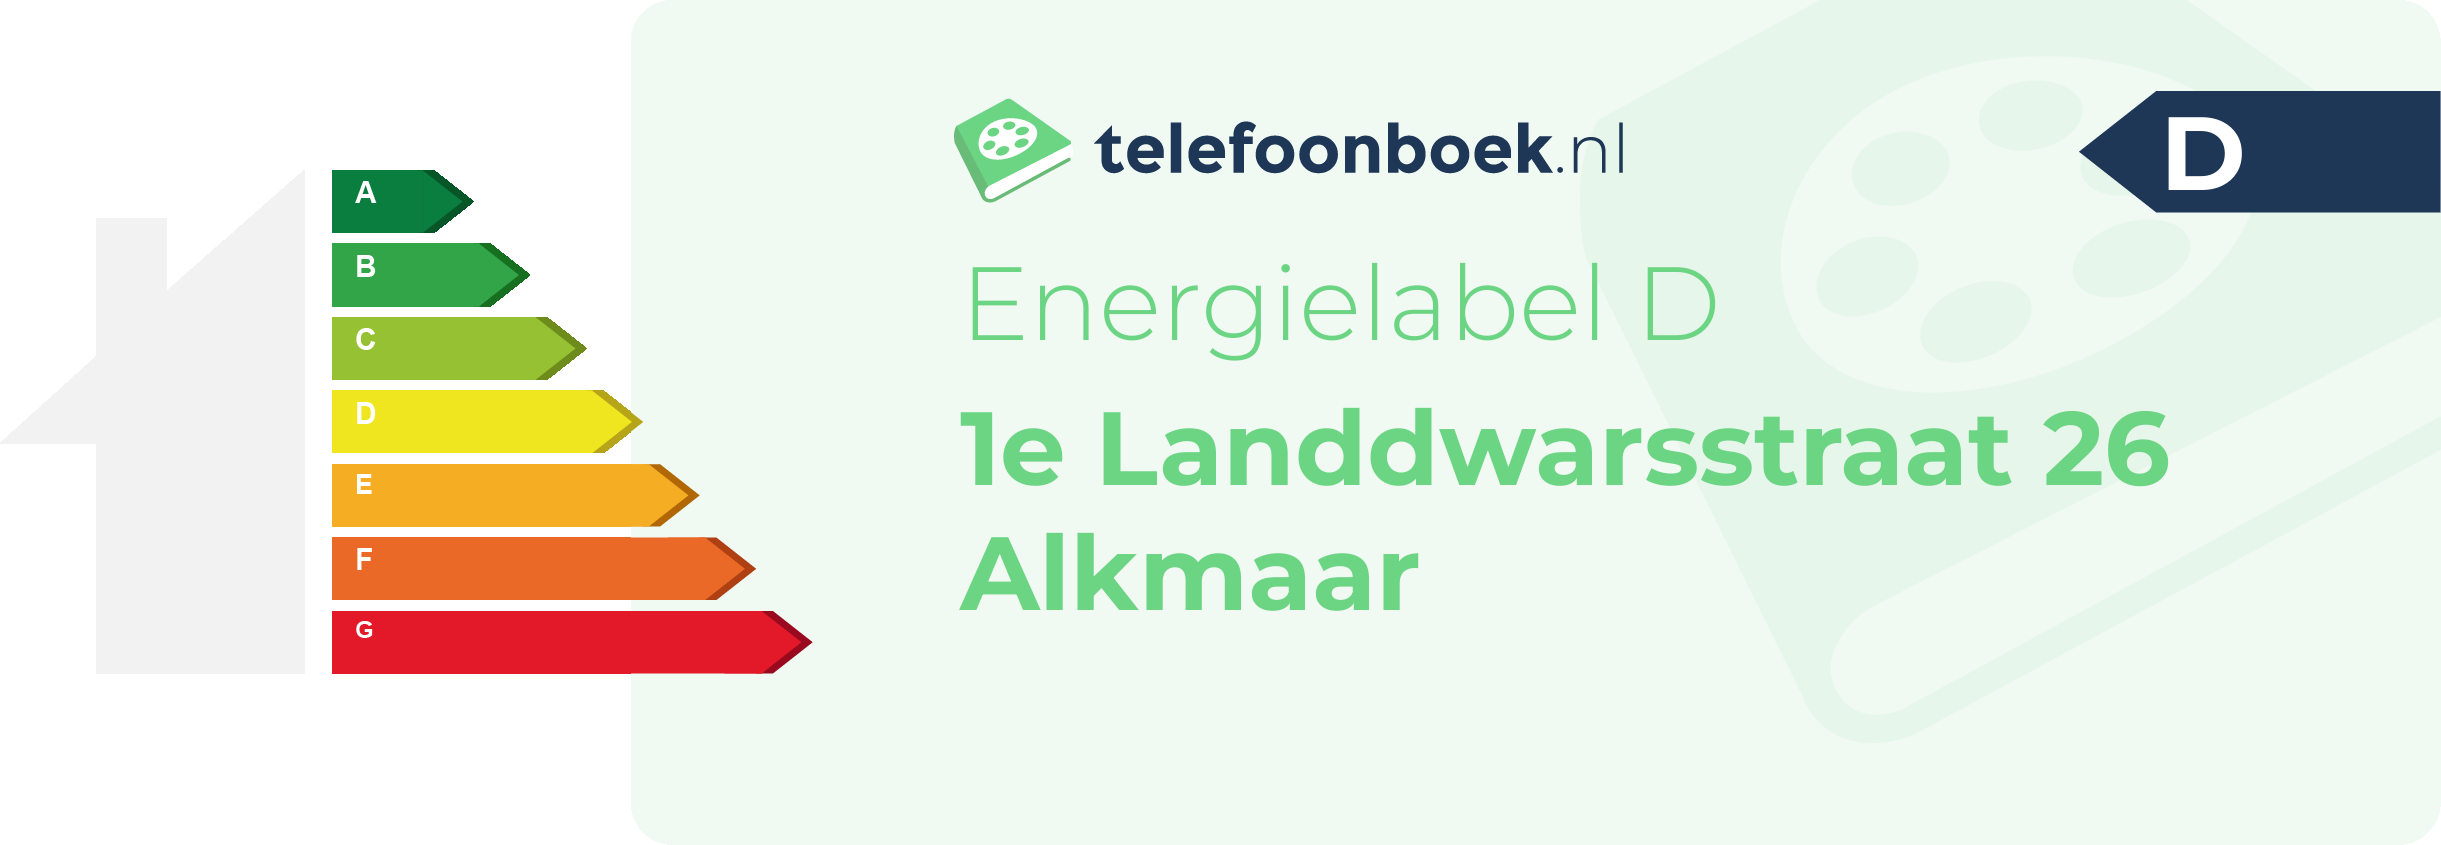 Energielabel 1e Landdwarsstraat 26 Alkmaar